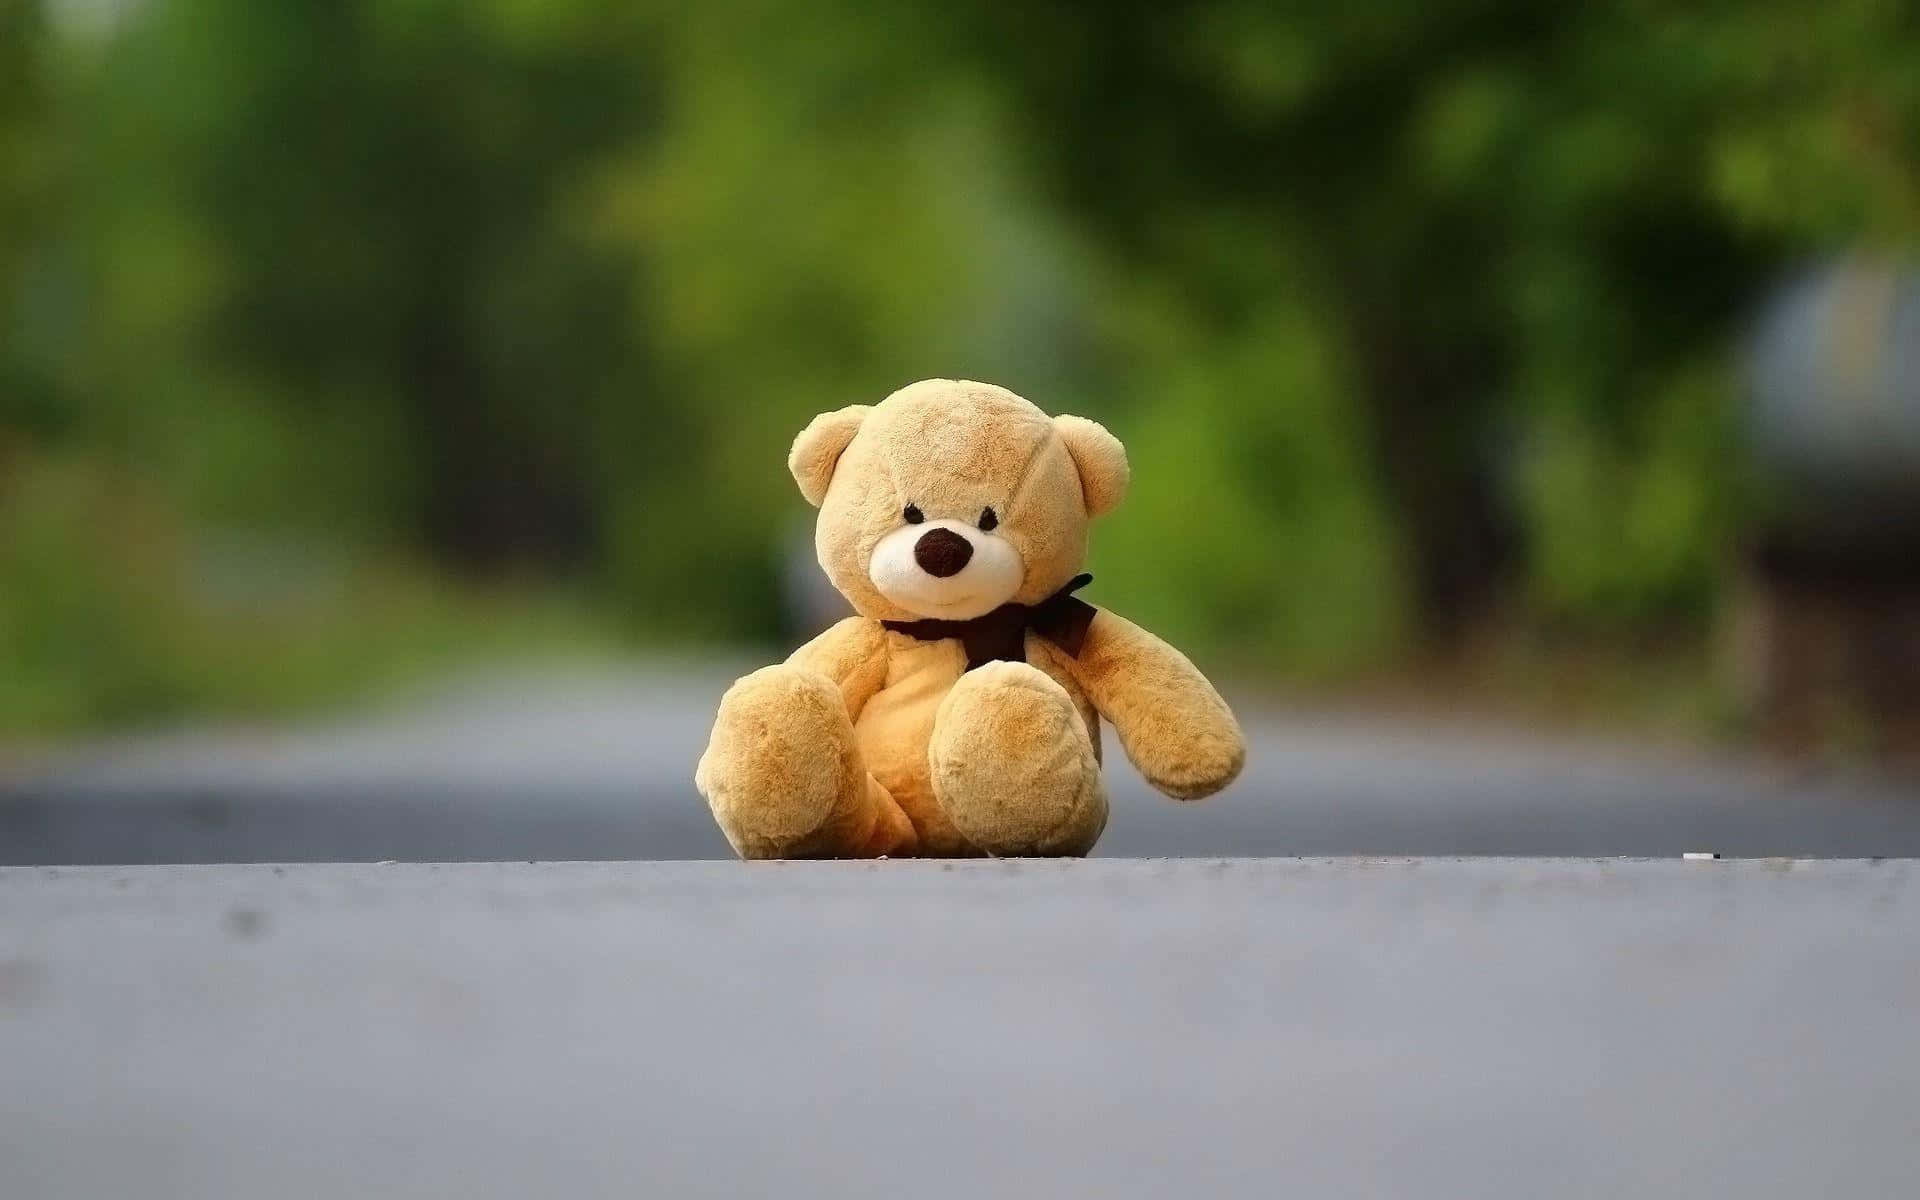 Lonely Teddy Bear On Road.jpg Wallpaper